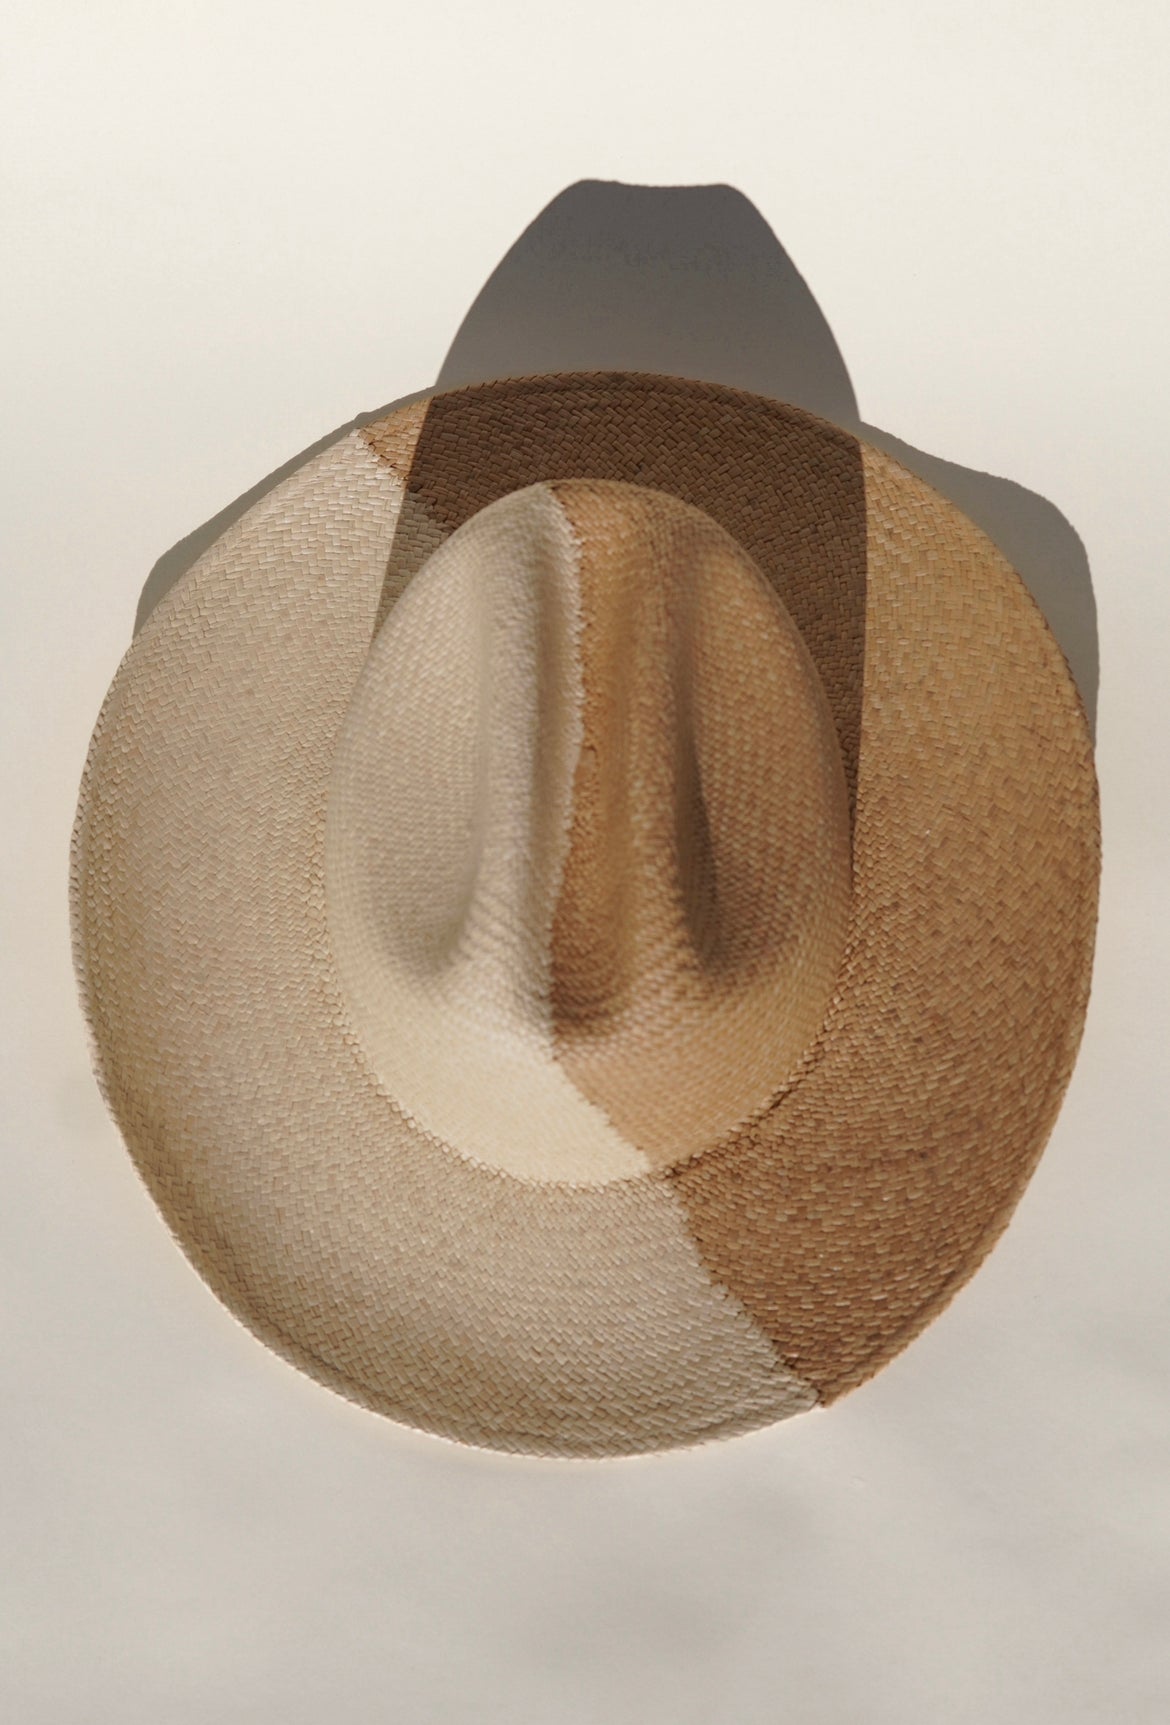 Bonnie - Two Toned Cowboy / Western Hat